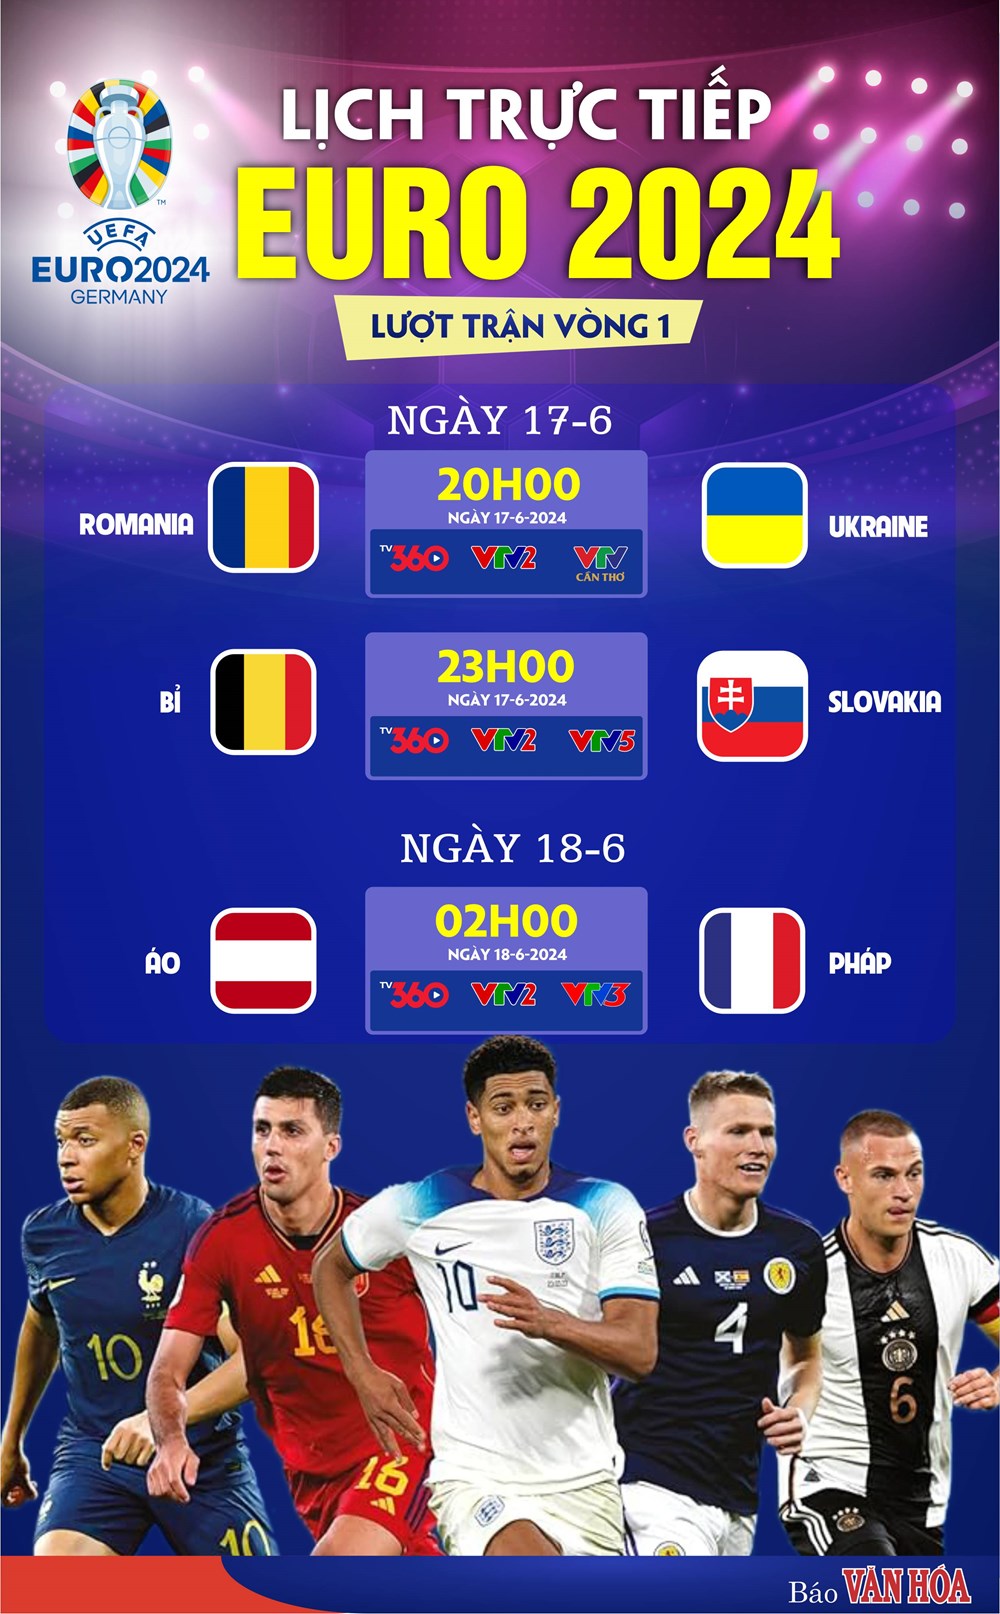 Đội tuyển Pháp, Bỉ ra quân, chờ bất ngờ từ Romania và Ukraine - ảnh 1